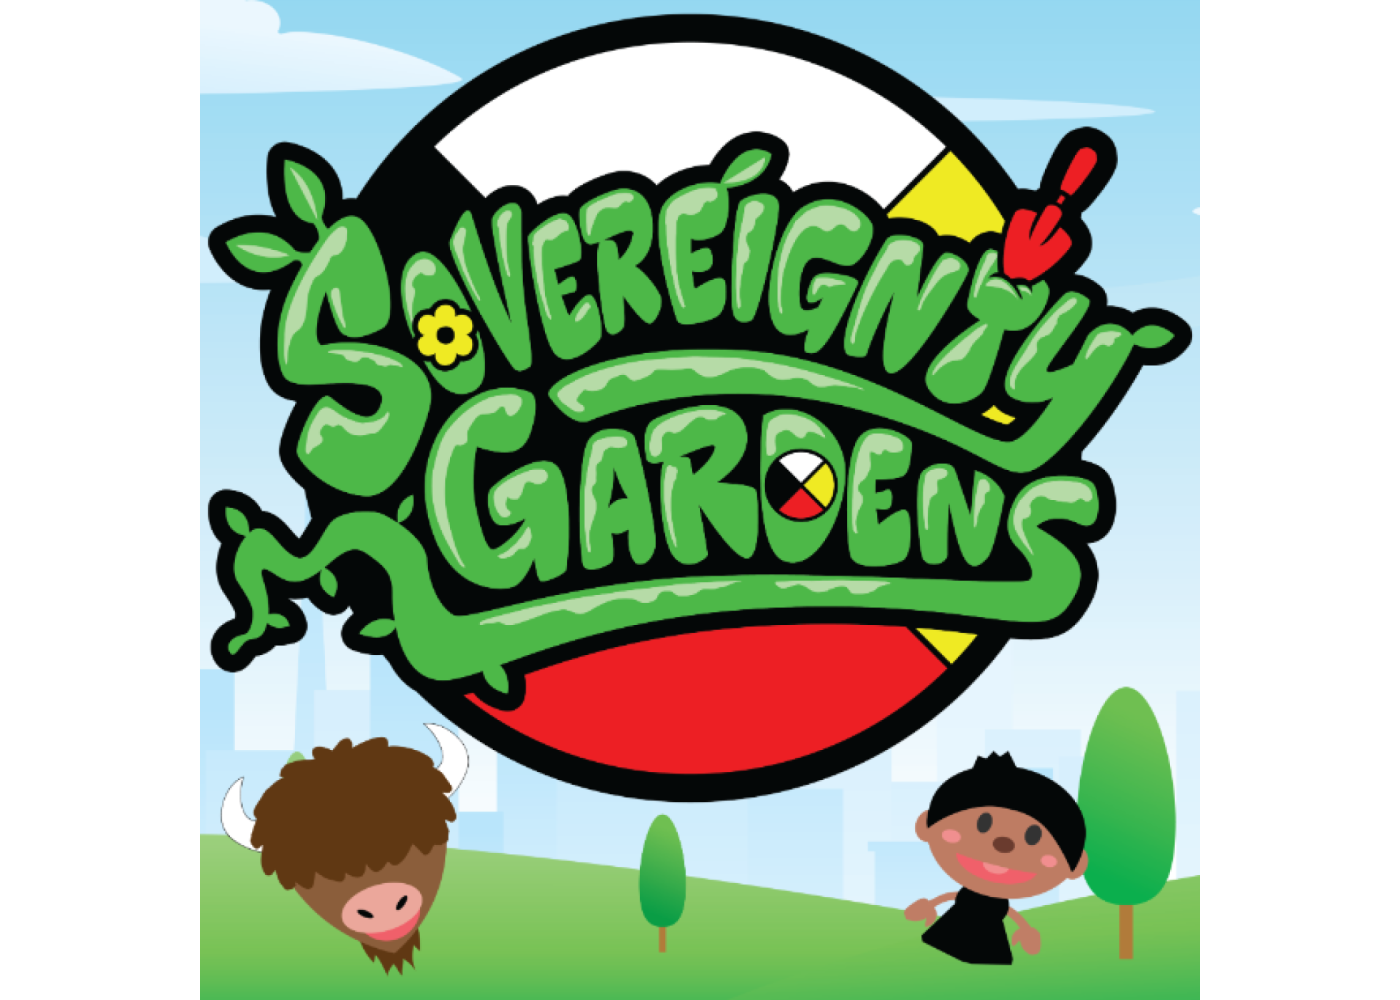 Sovereignty Gardens Logo